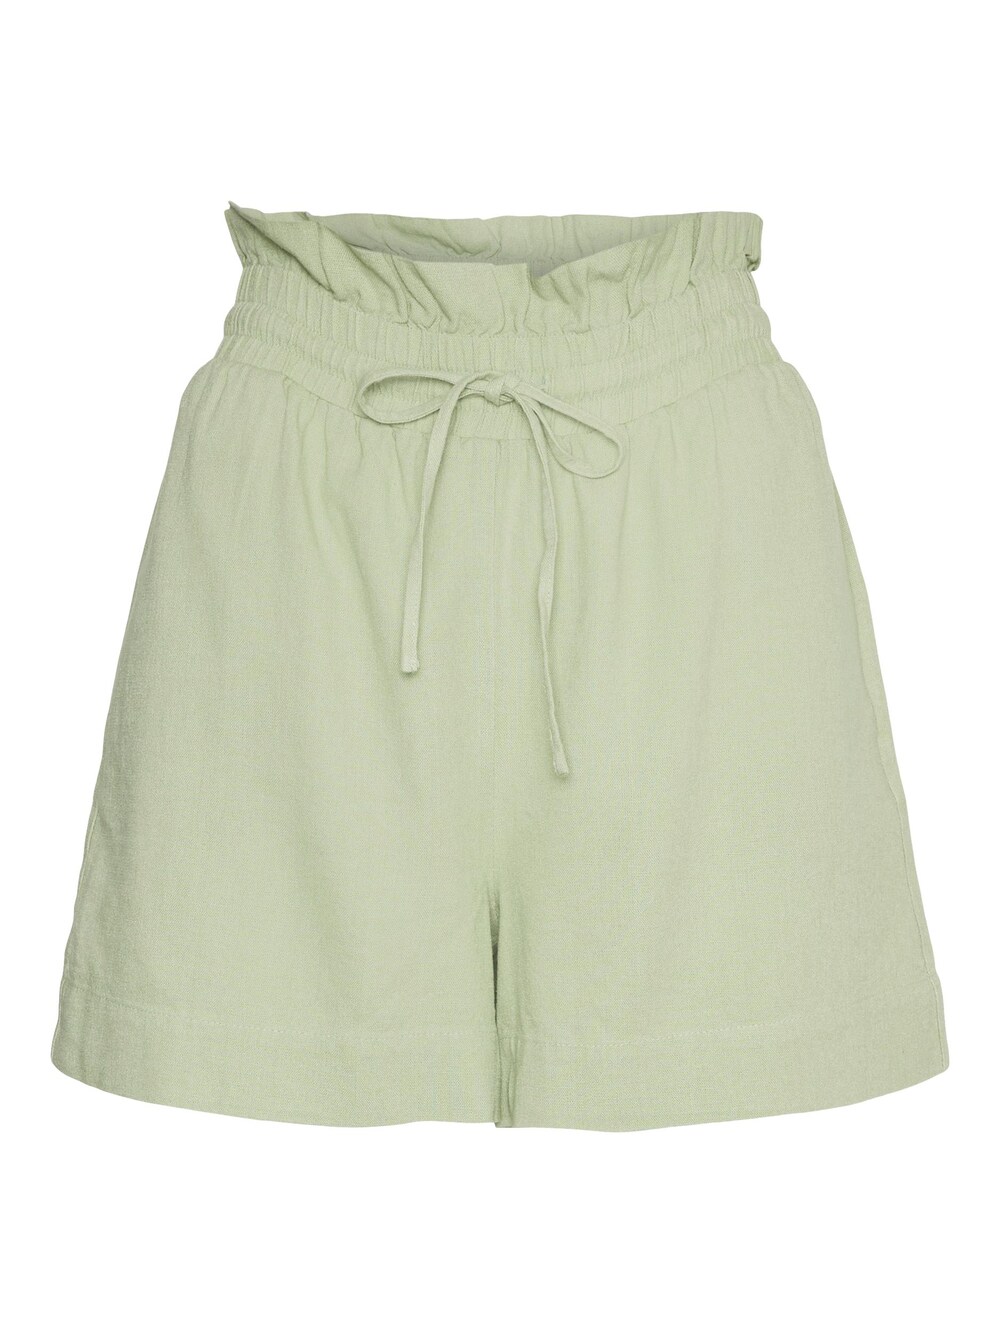 Обычные брюки VERO MODA Mymilo, пастельно-зеленый обычные брюки vero moda girl octavia пастельно зеленый